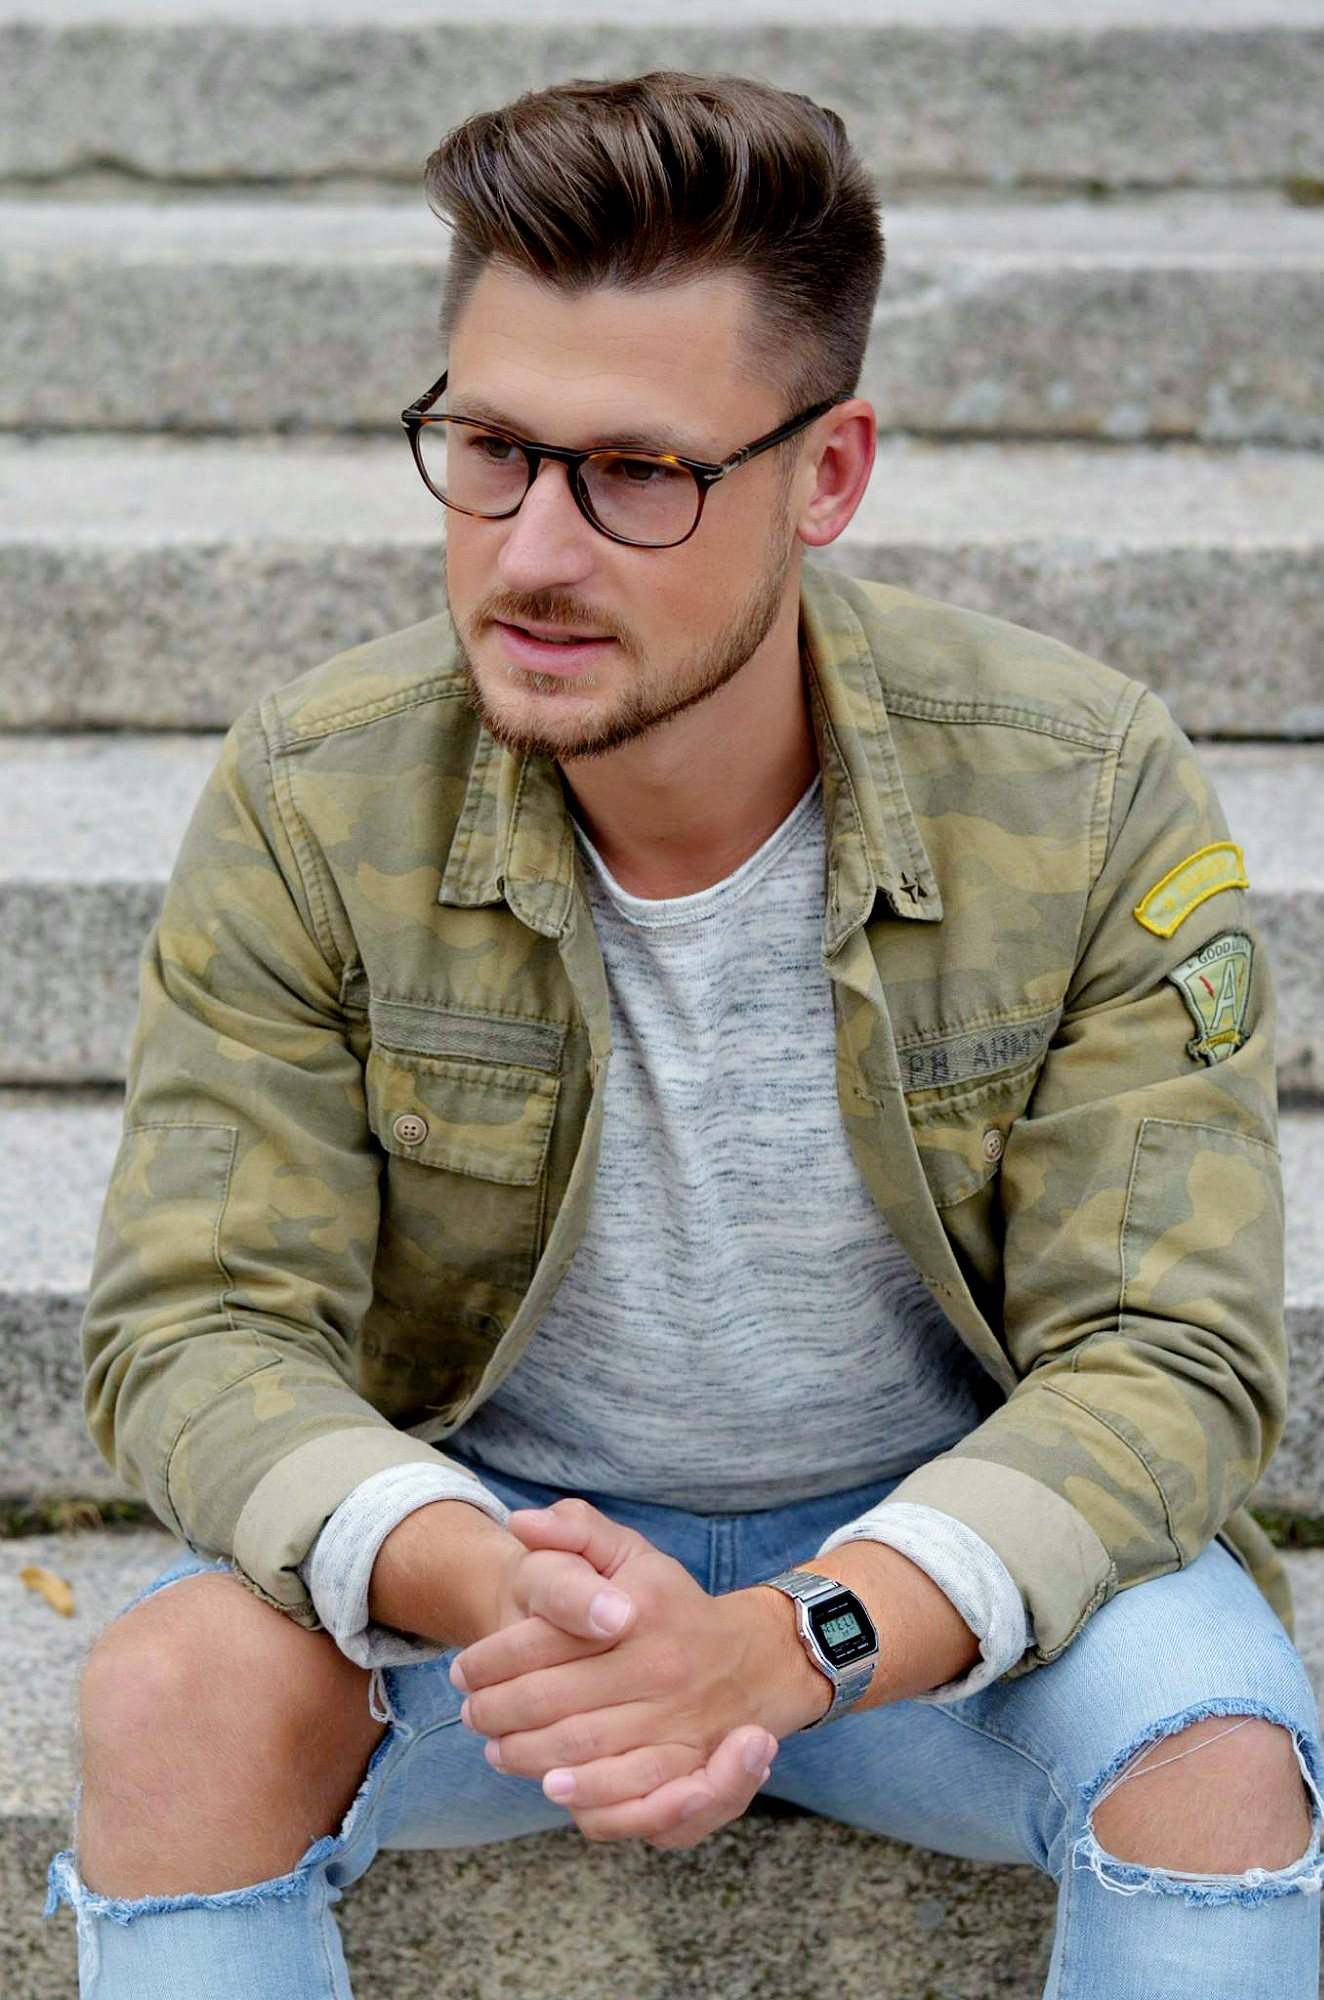 Modeblog-Berlin-Männer-Blog-Fashion-Camouflage-Jacke-Casio-Uhr